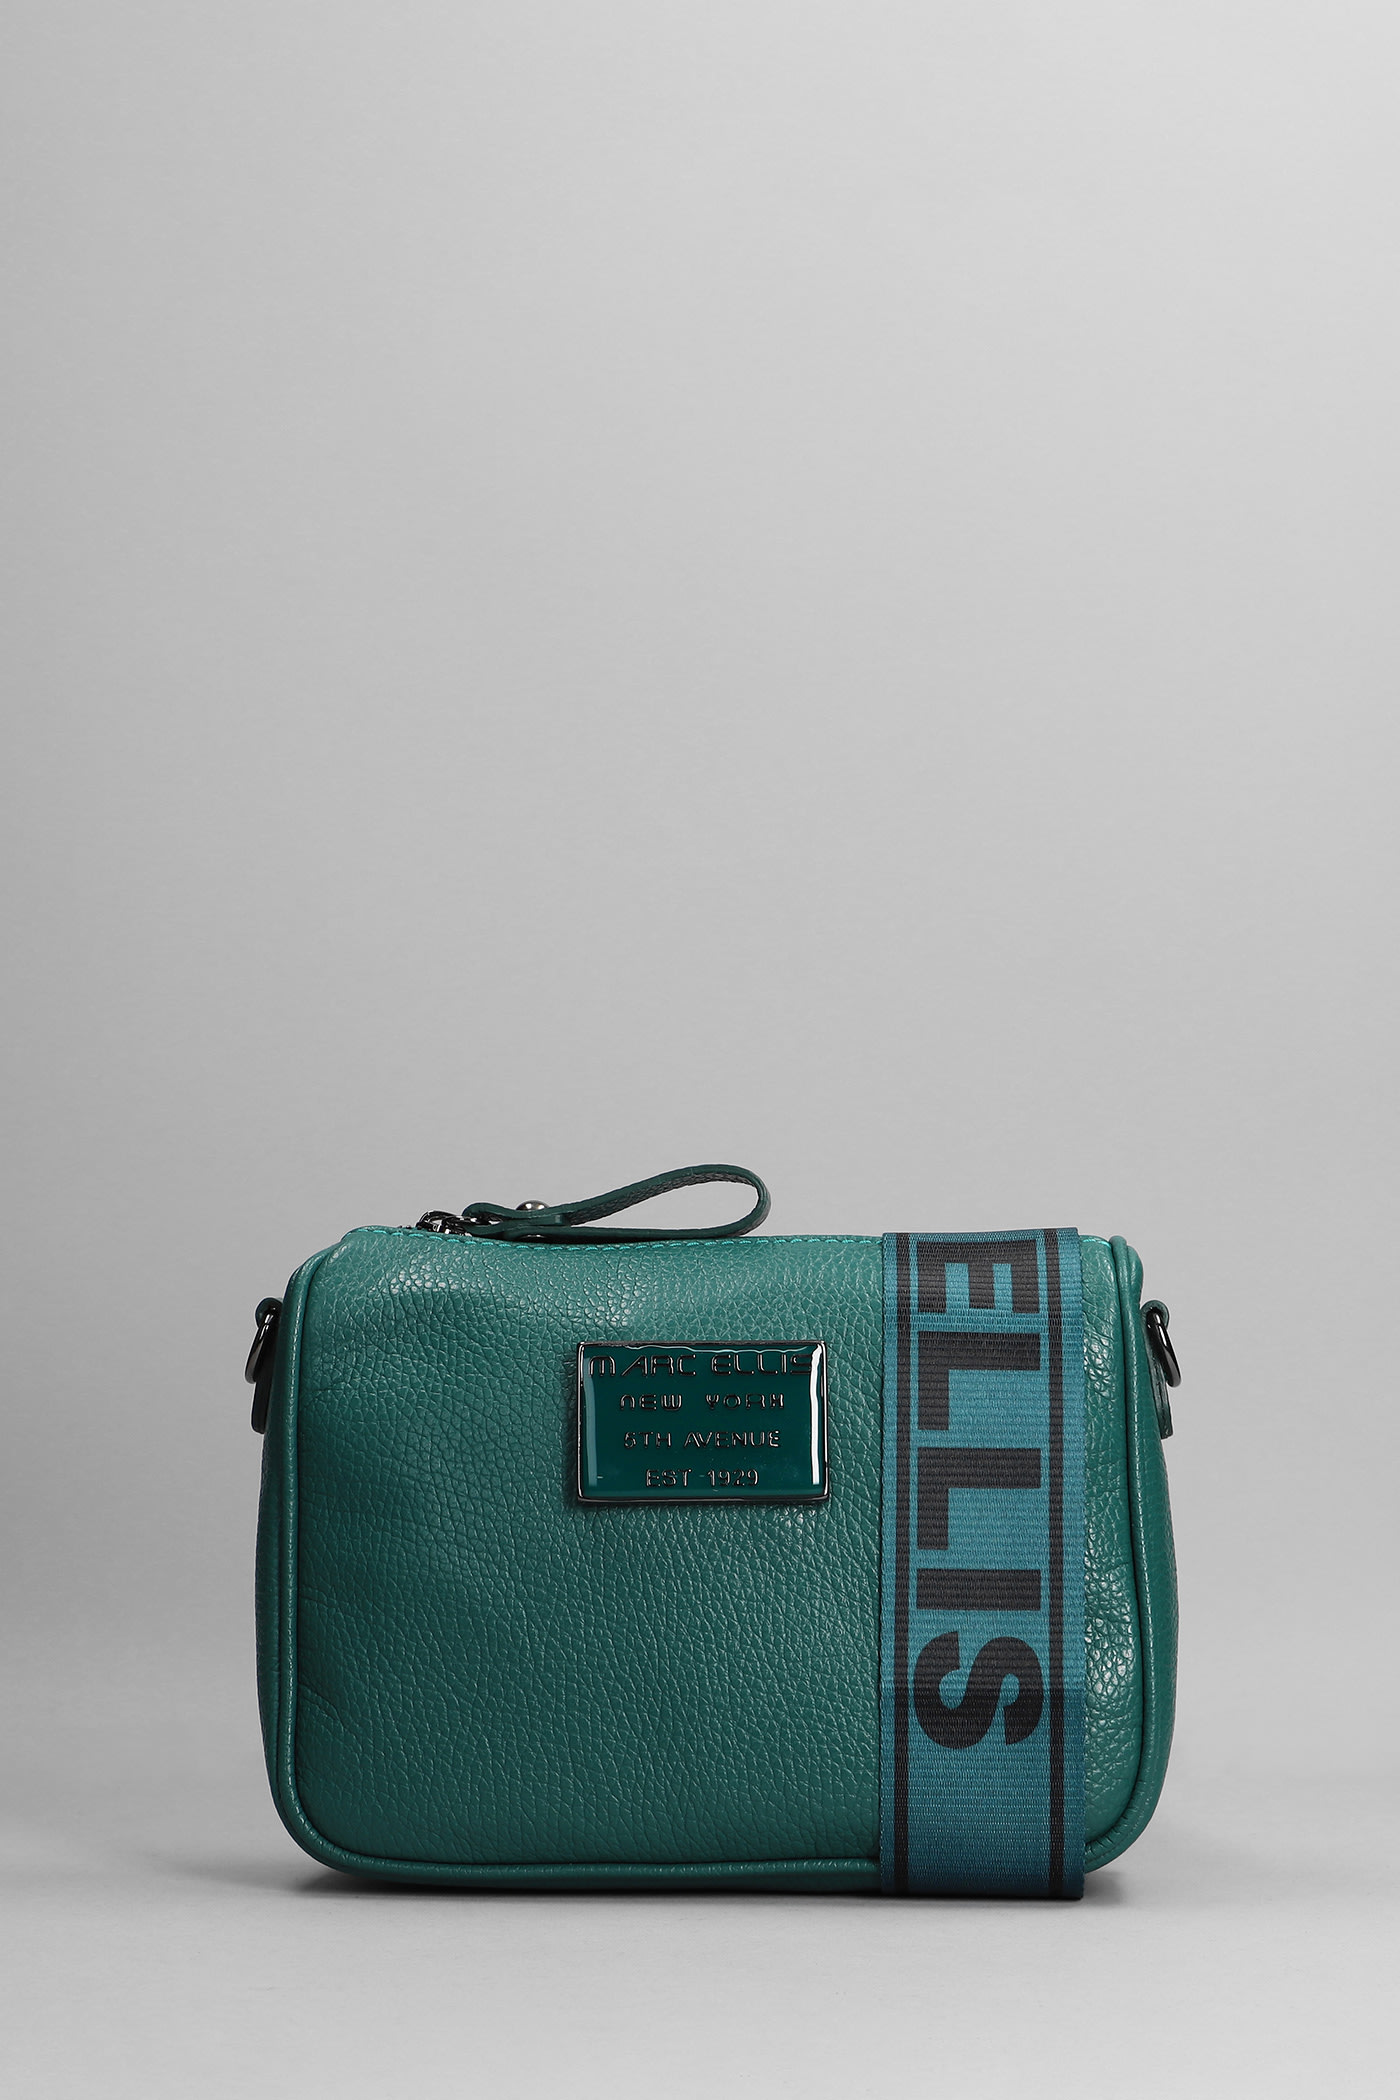 Marc Ellis The Star Glam Shoulder Bag In Green Leather